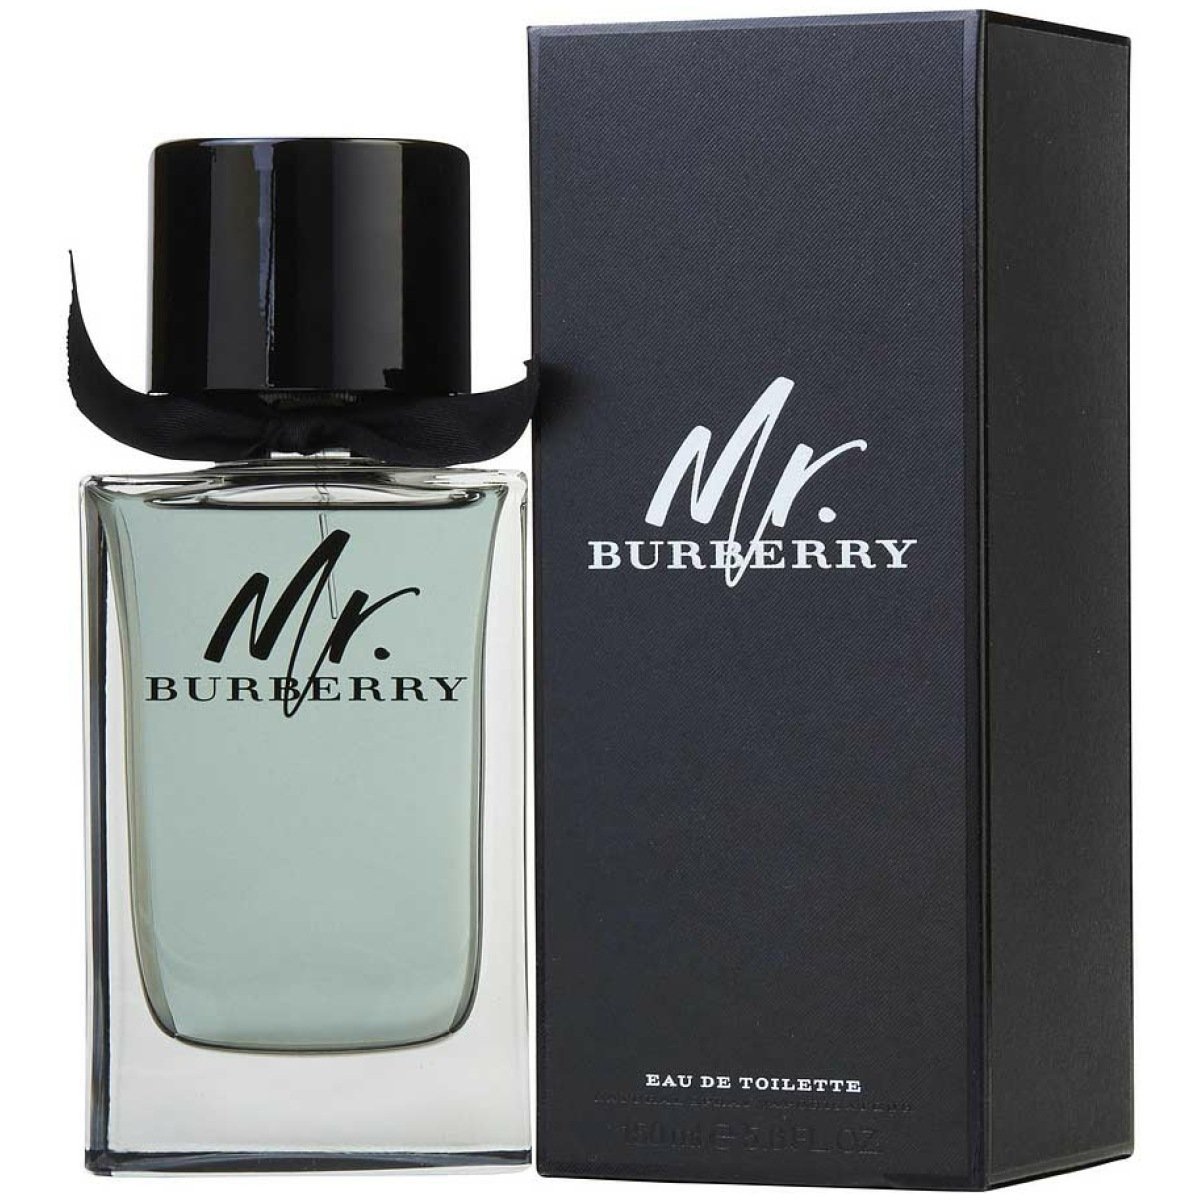 Mr. Burberry EDT Perfume For Men 100ml